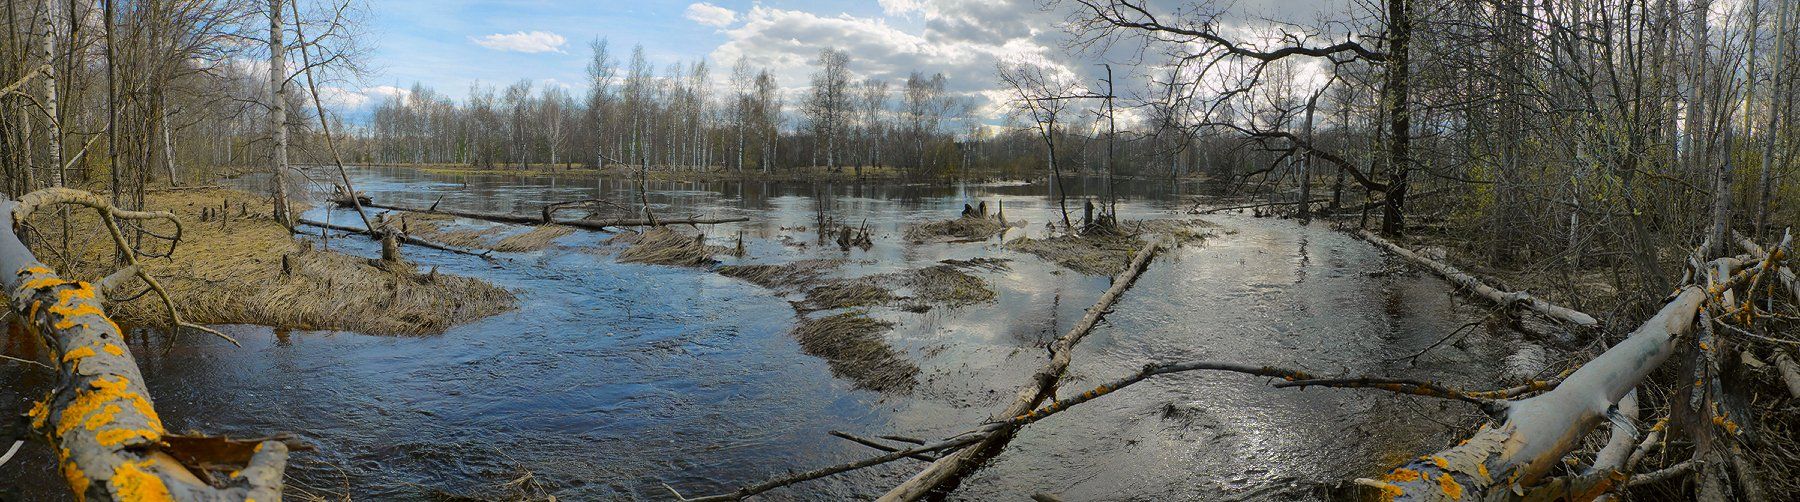 половодье, весна, река, большая вода, мещёра, рязанская область, Валерий Пешков